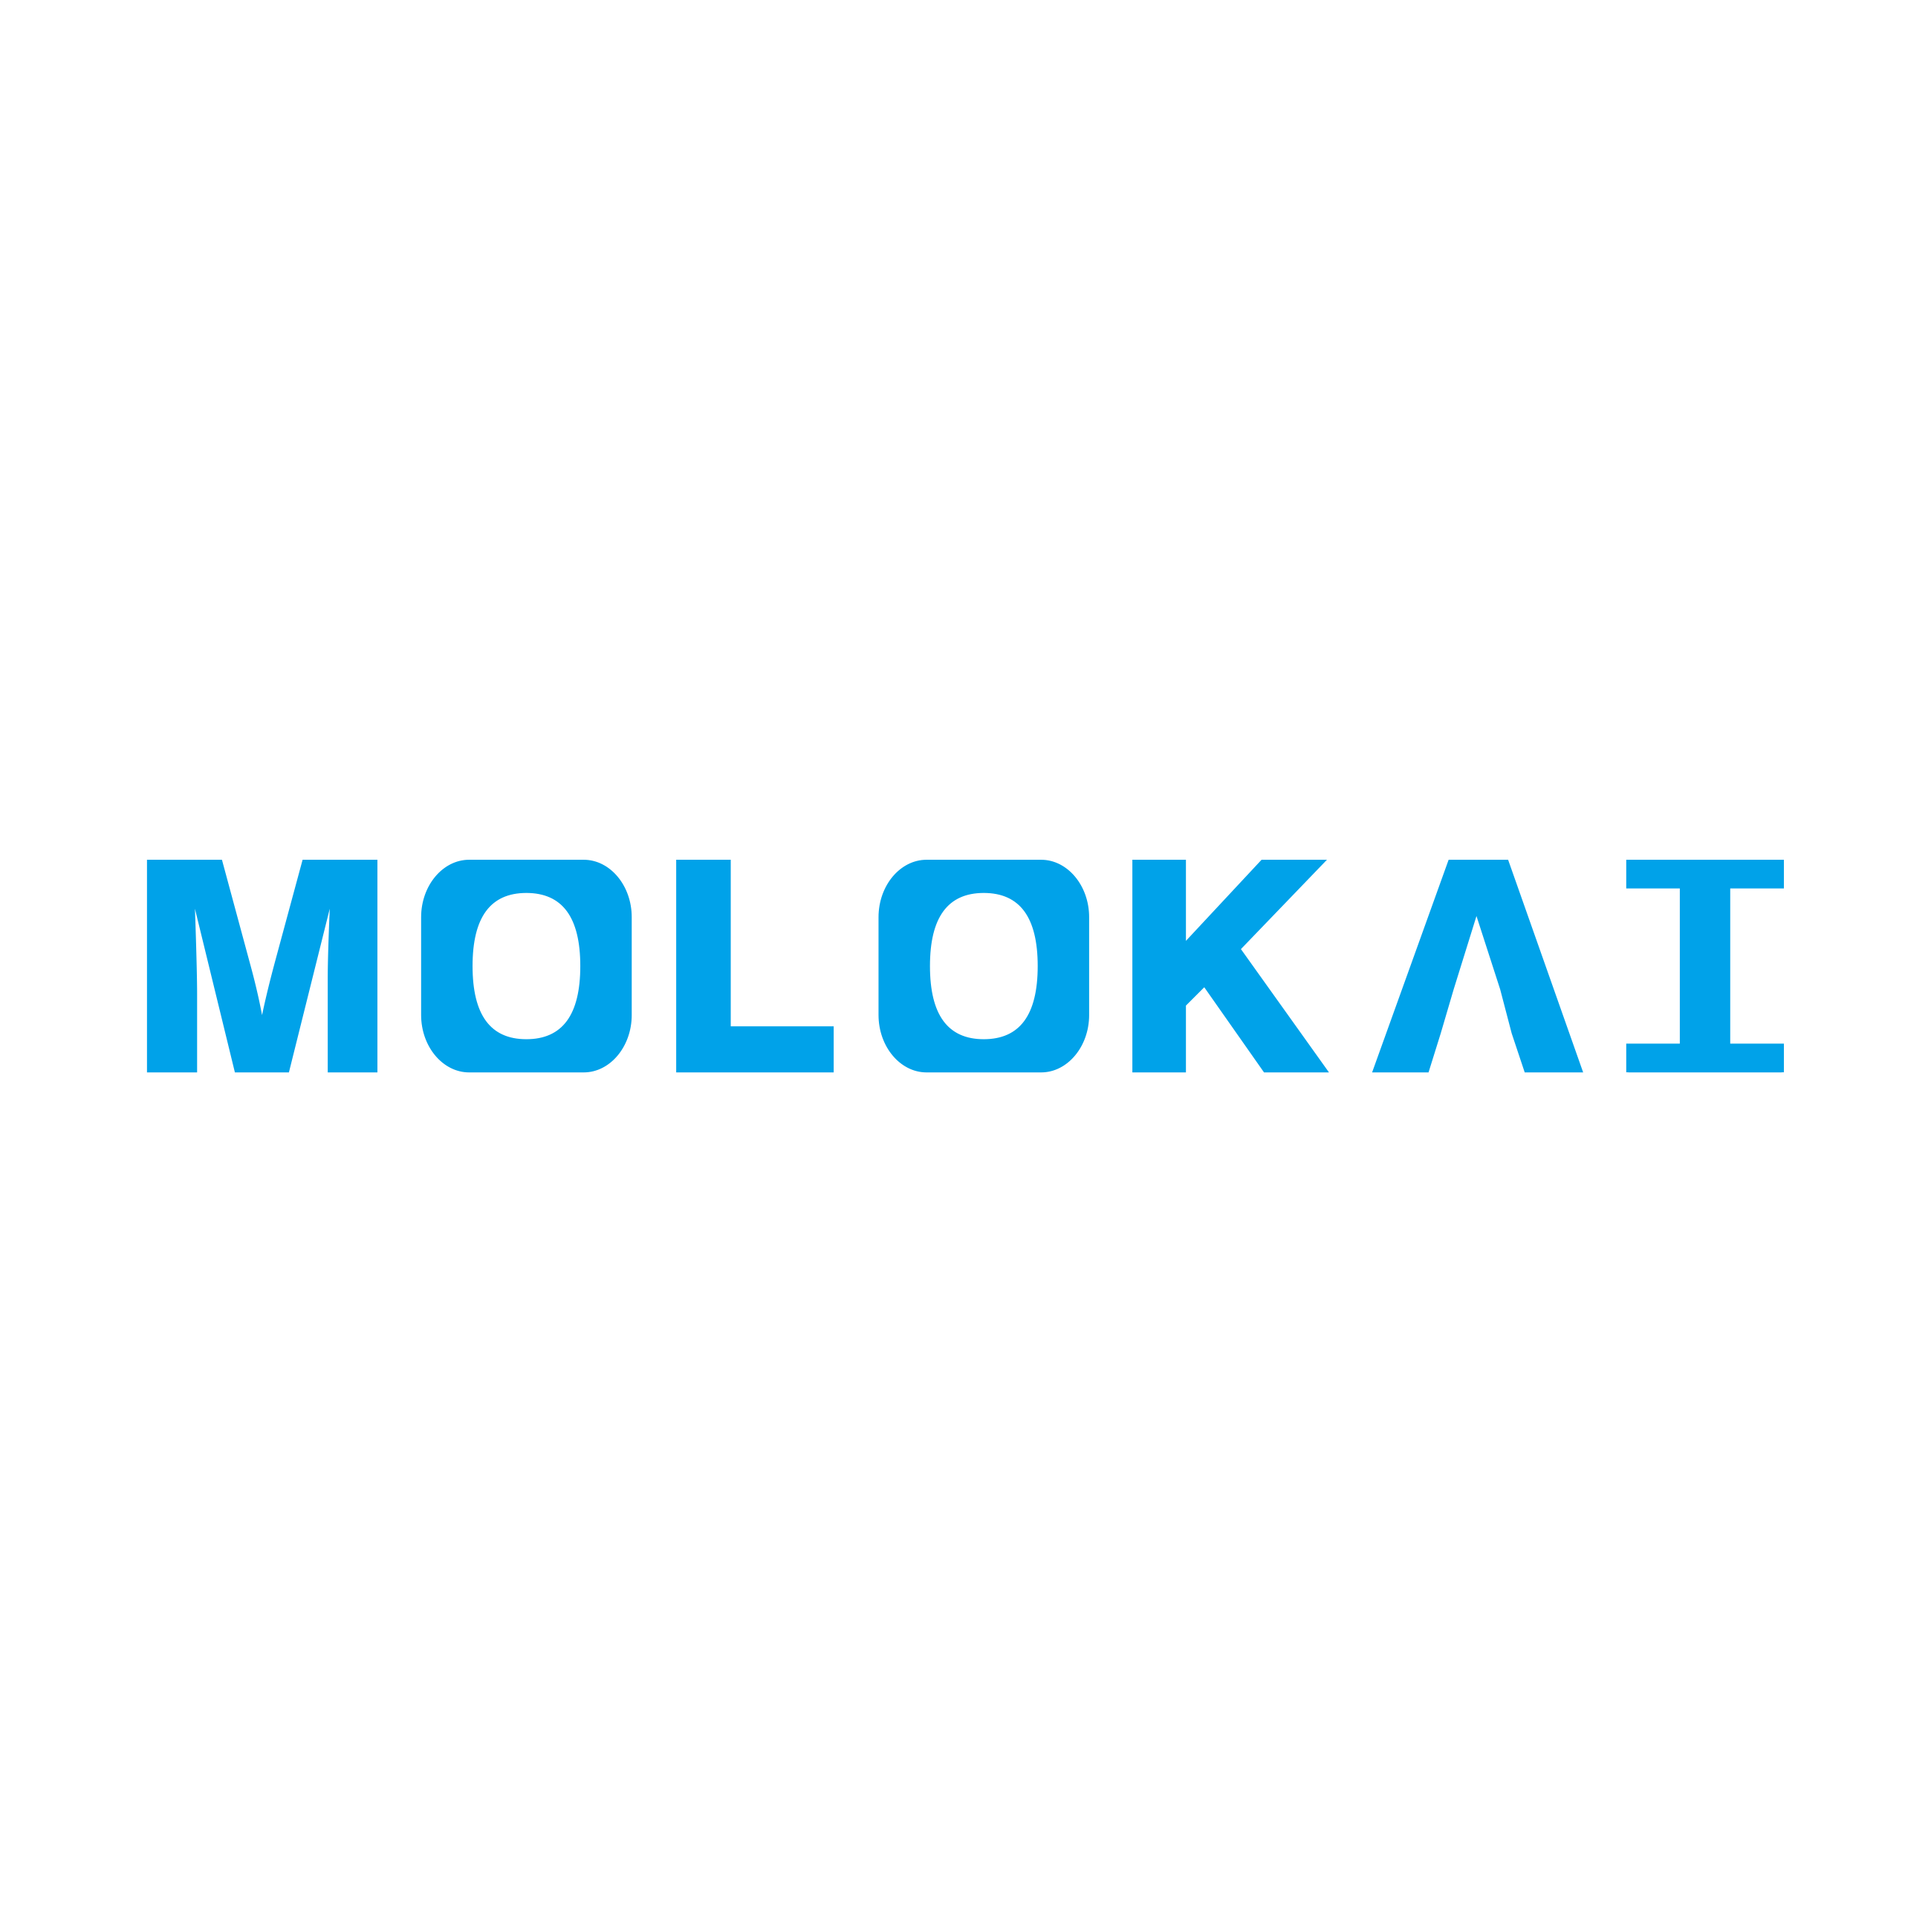 MOLOKAI 直销店